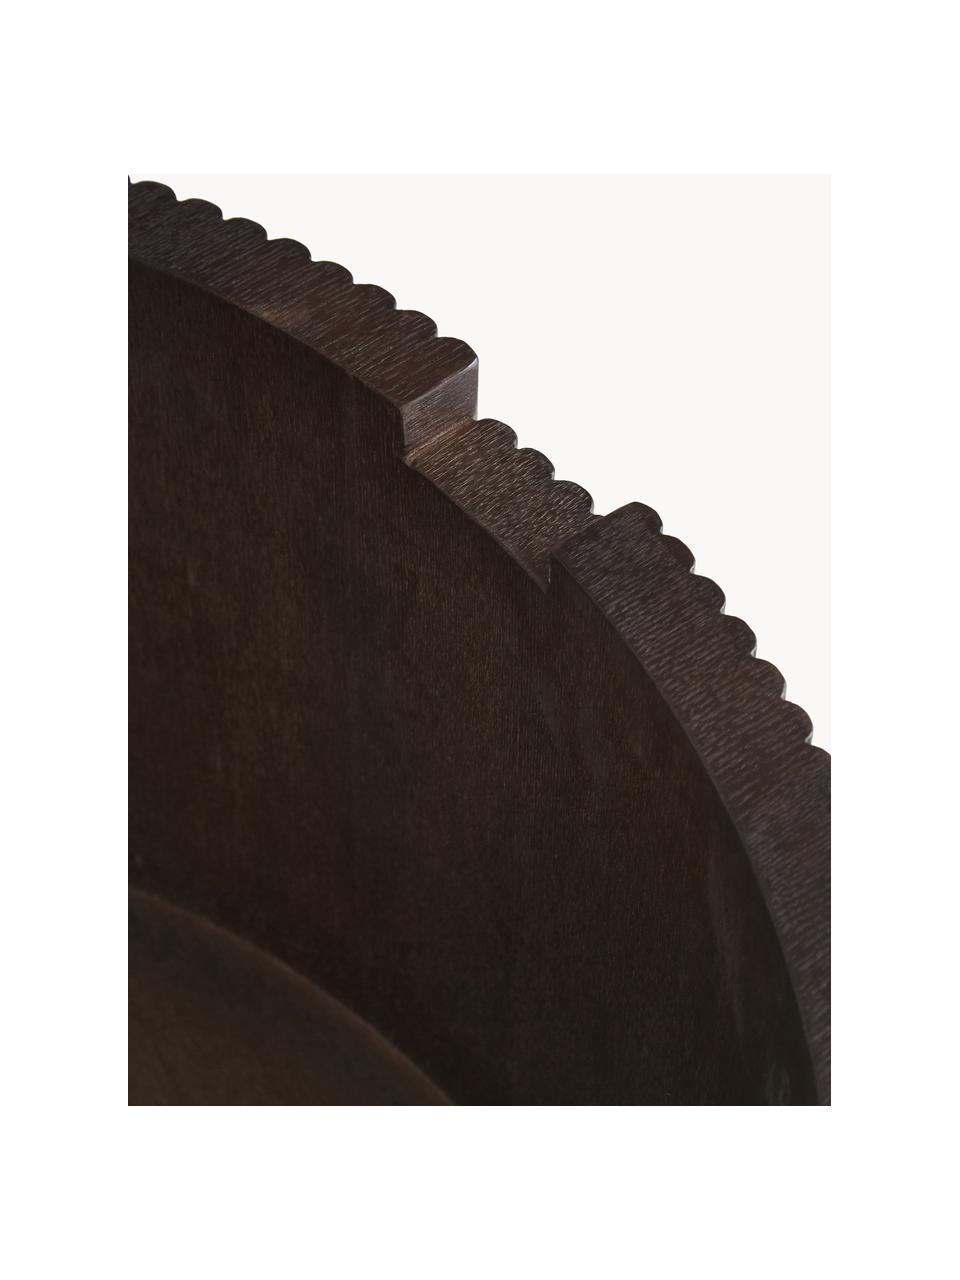 Mesa de centro redonda de madera Nele, con espacio de almacenamiento, Tablero de fibras de densidad media (MDF) chapado en madera de fresno, Madera, marrón oscuro pintado, Ø 70 cm